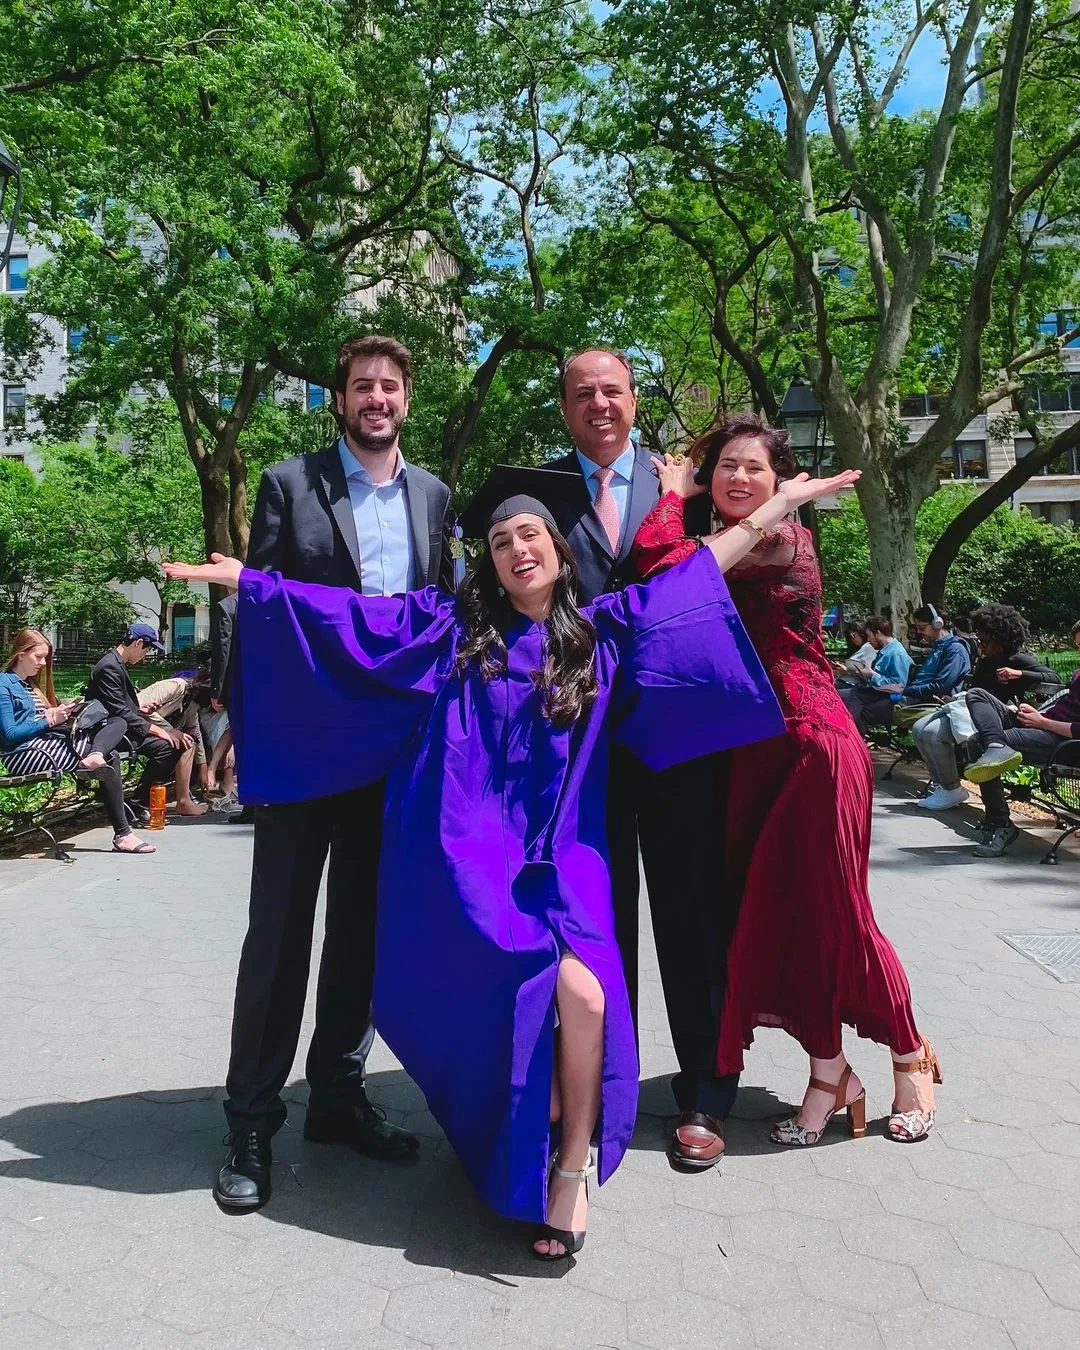 Foto da formatura de Mia, em 2019 junto com sua família